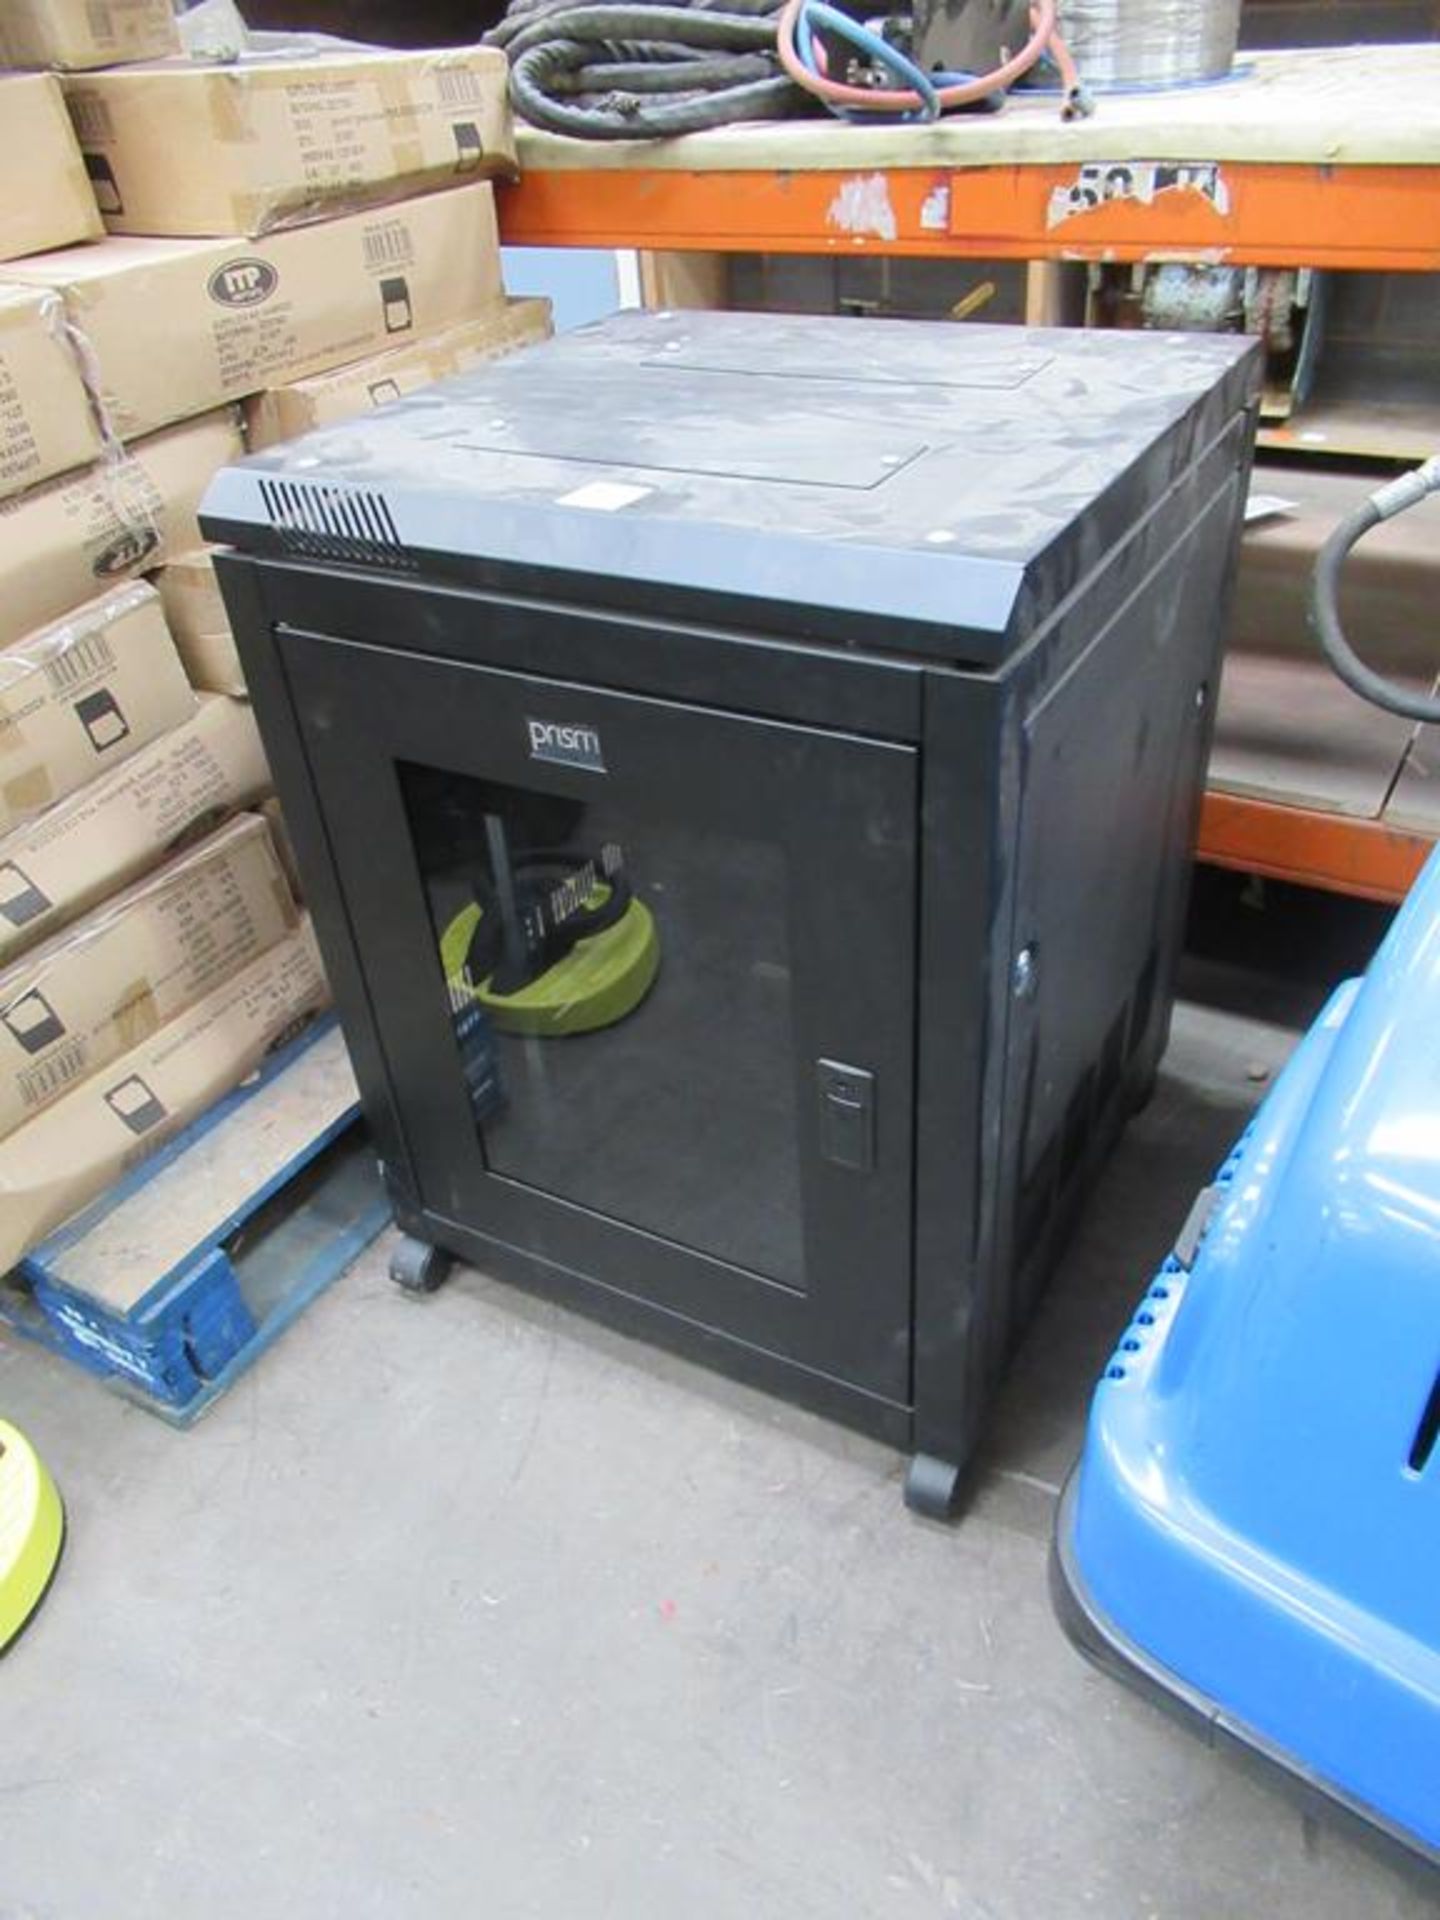 A Prism Server Cabinet - Image 2 of 2